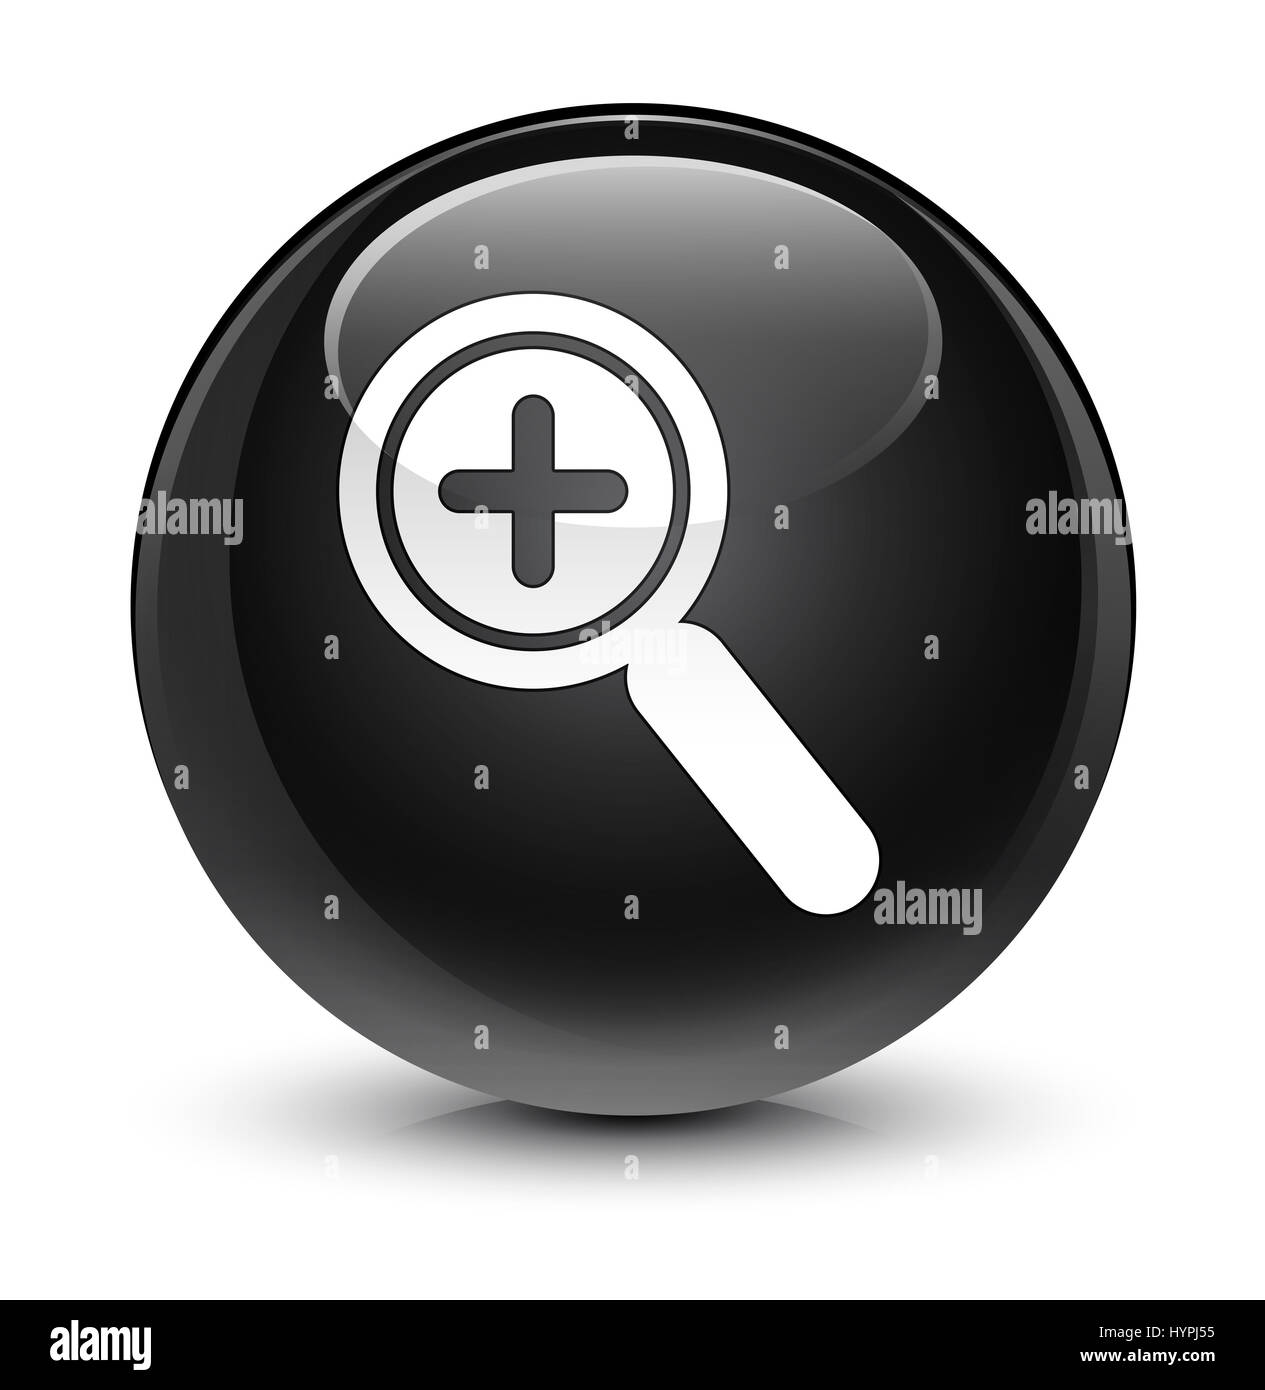 Dans l'icône Zoom isolé sur le bouton rond noir vitreux abstract illustration Banque D'Images